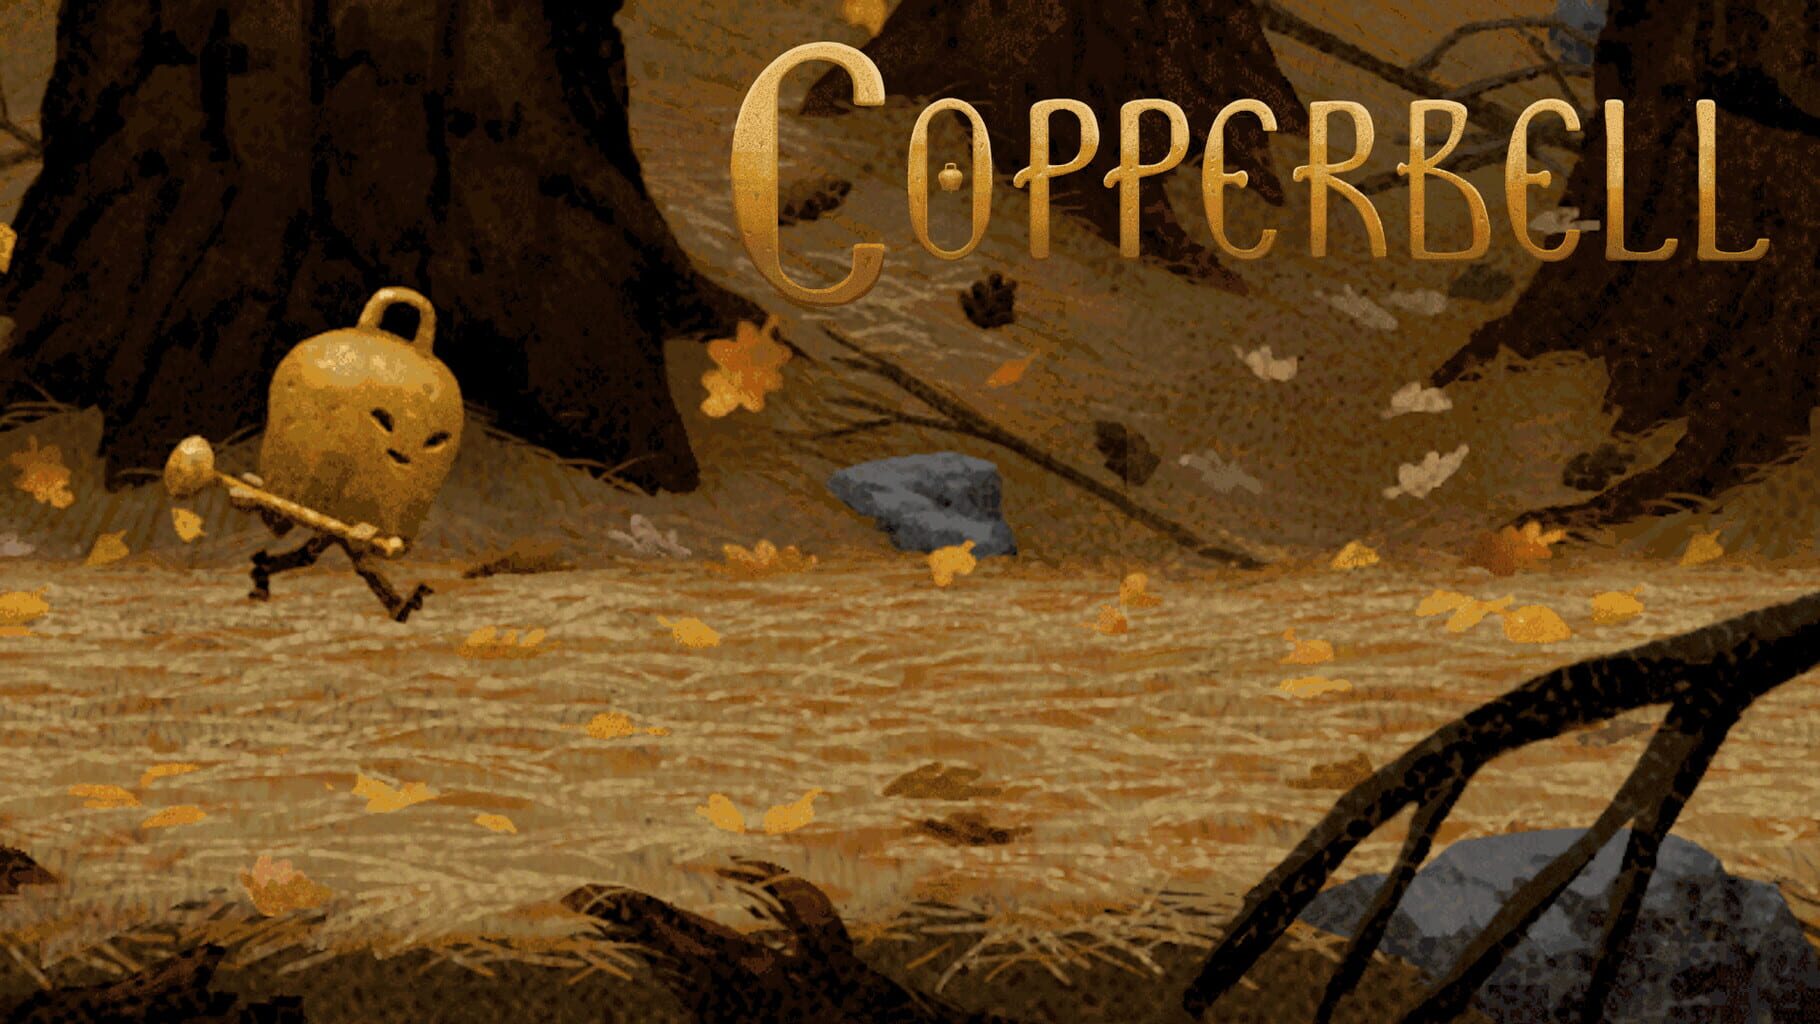 Copperbell artwork